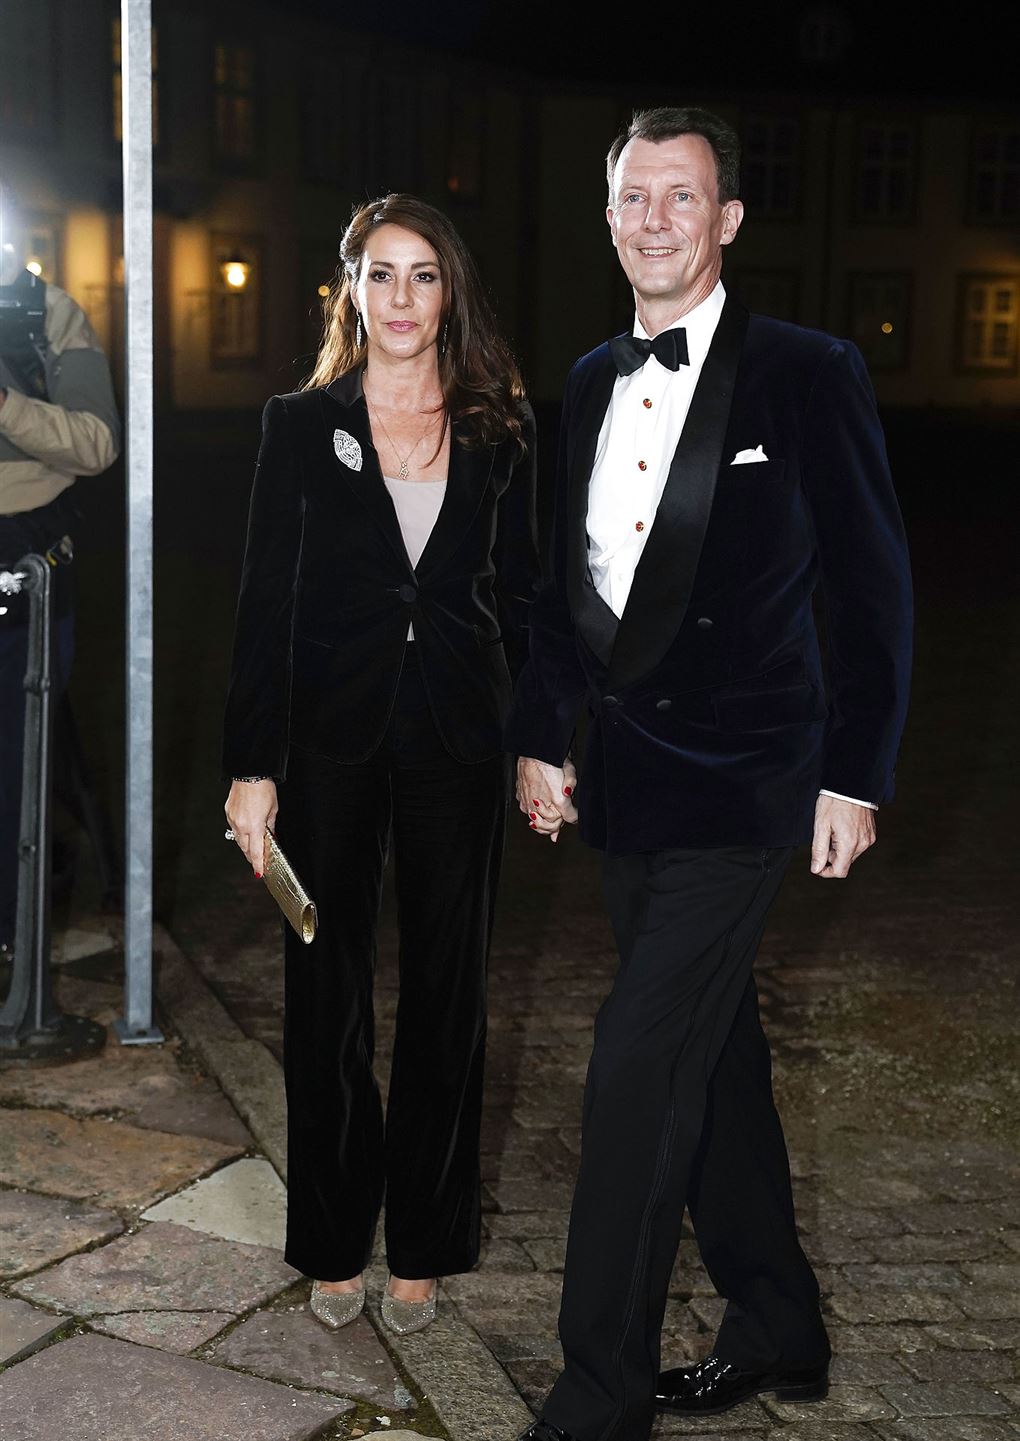 Prinsesse Marie og prins Joachim i sort og hvidt tøj